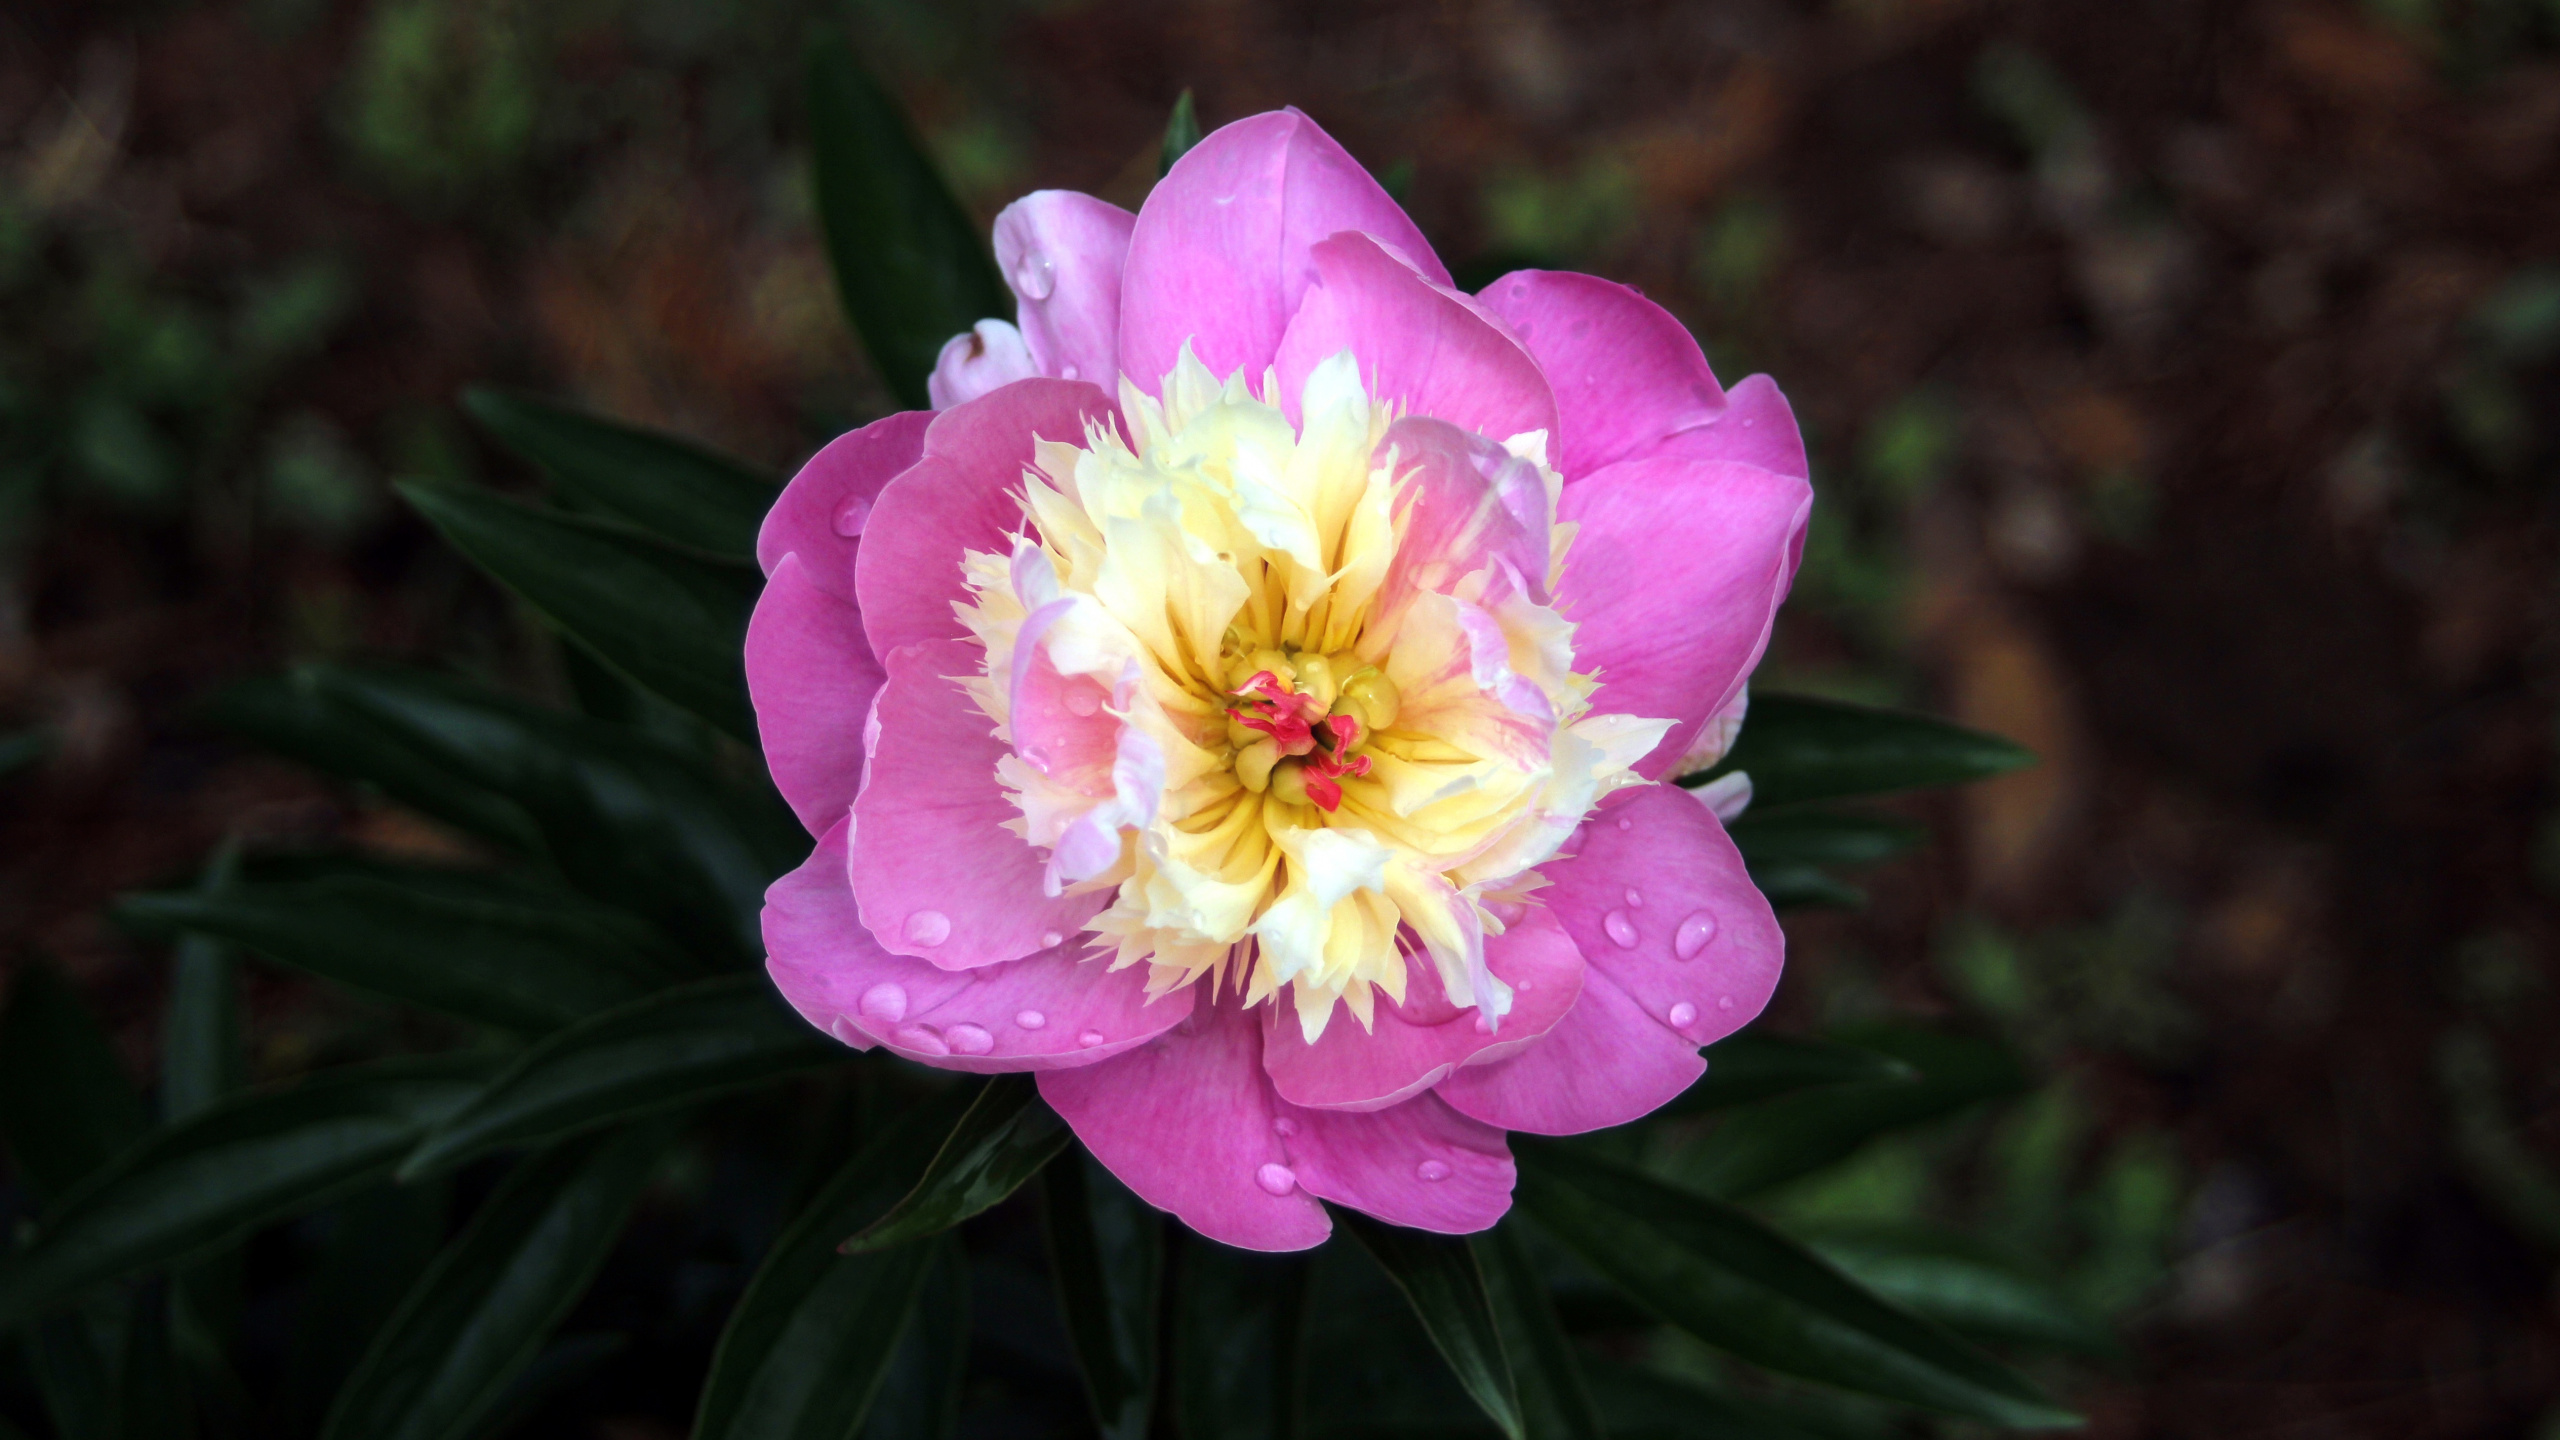 Pink Flower in Tilt Shift Lens. Wallpaper in 2560x1440 Resolution